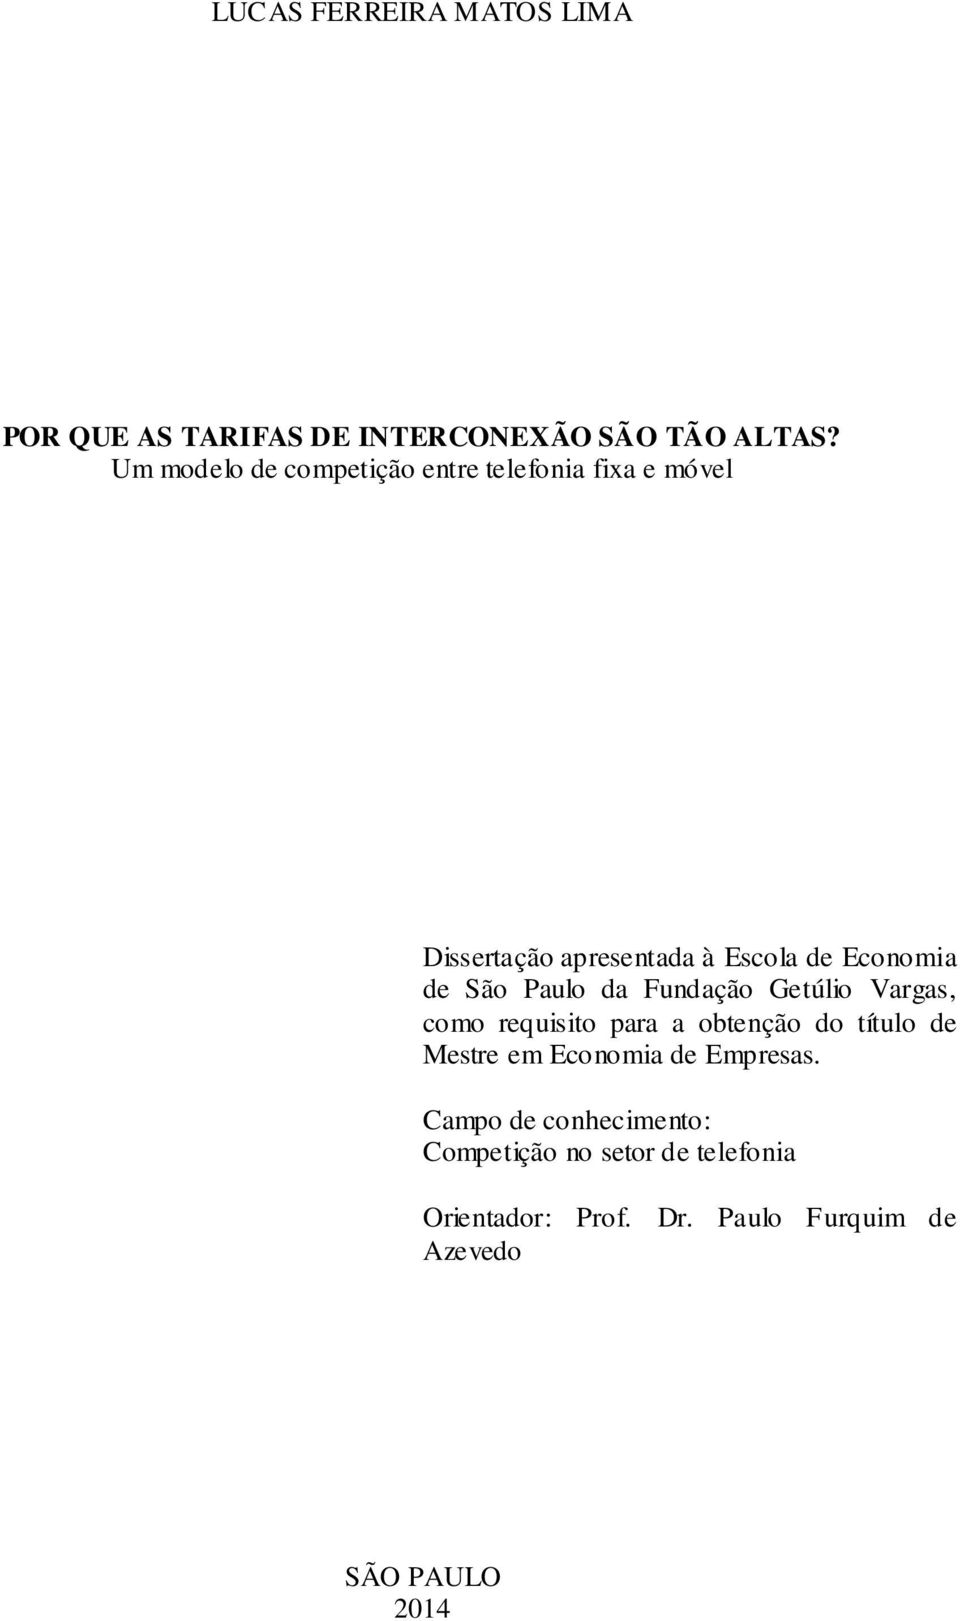 São Paulo da Fundação Getúlio Vargas, como requisito para a obtenção do título de Mestre em Economia